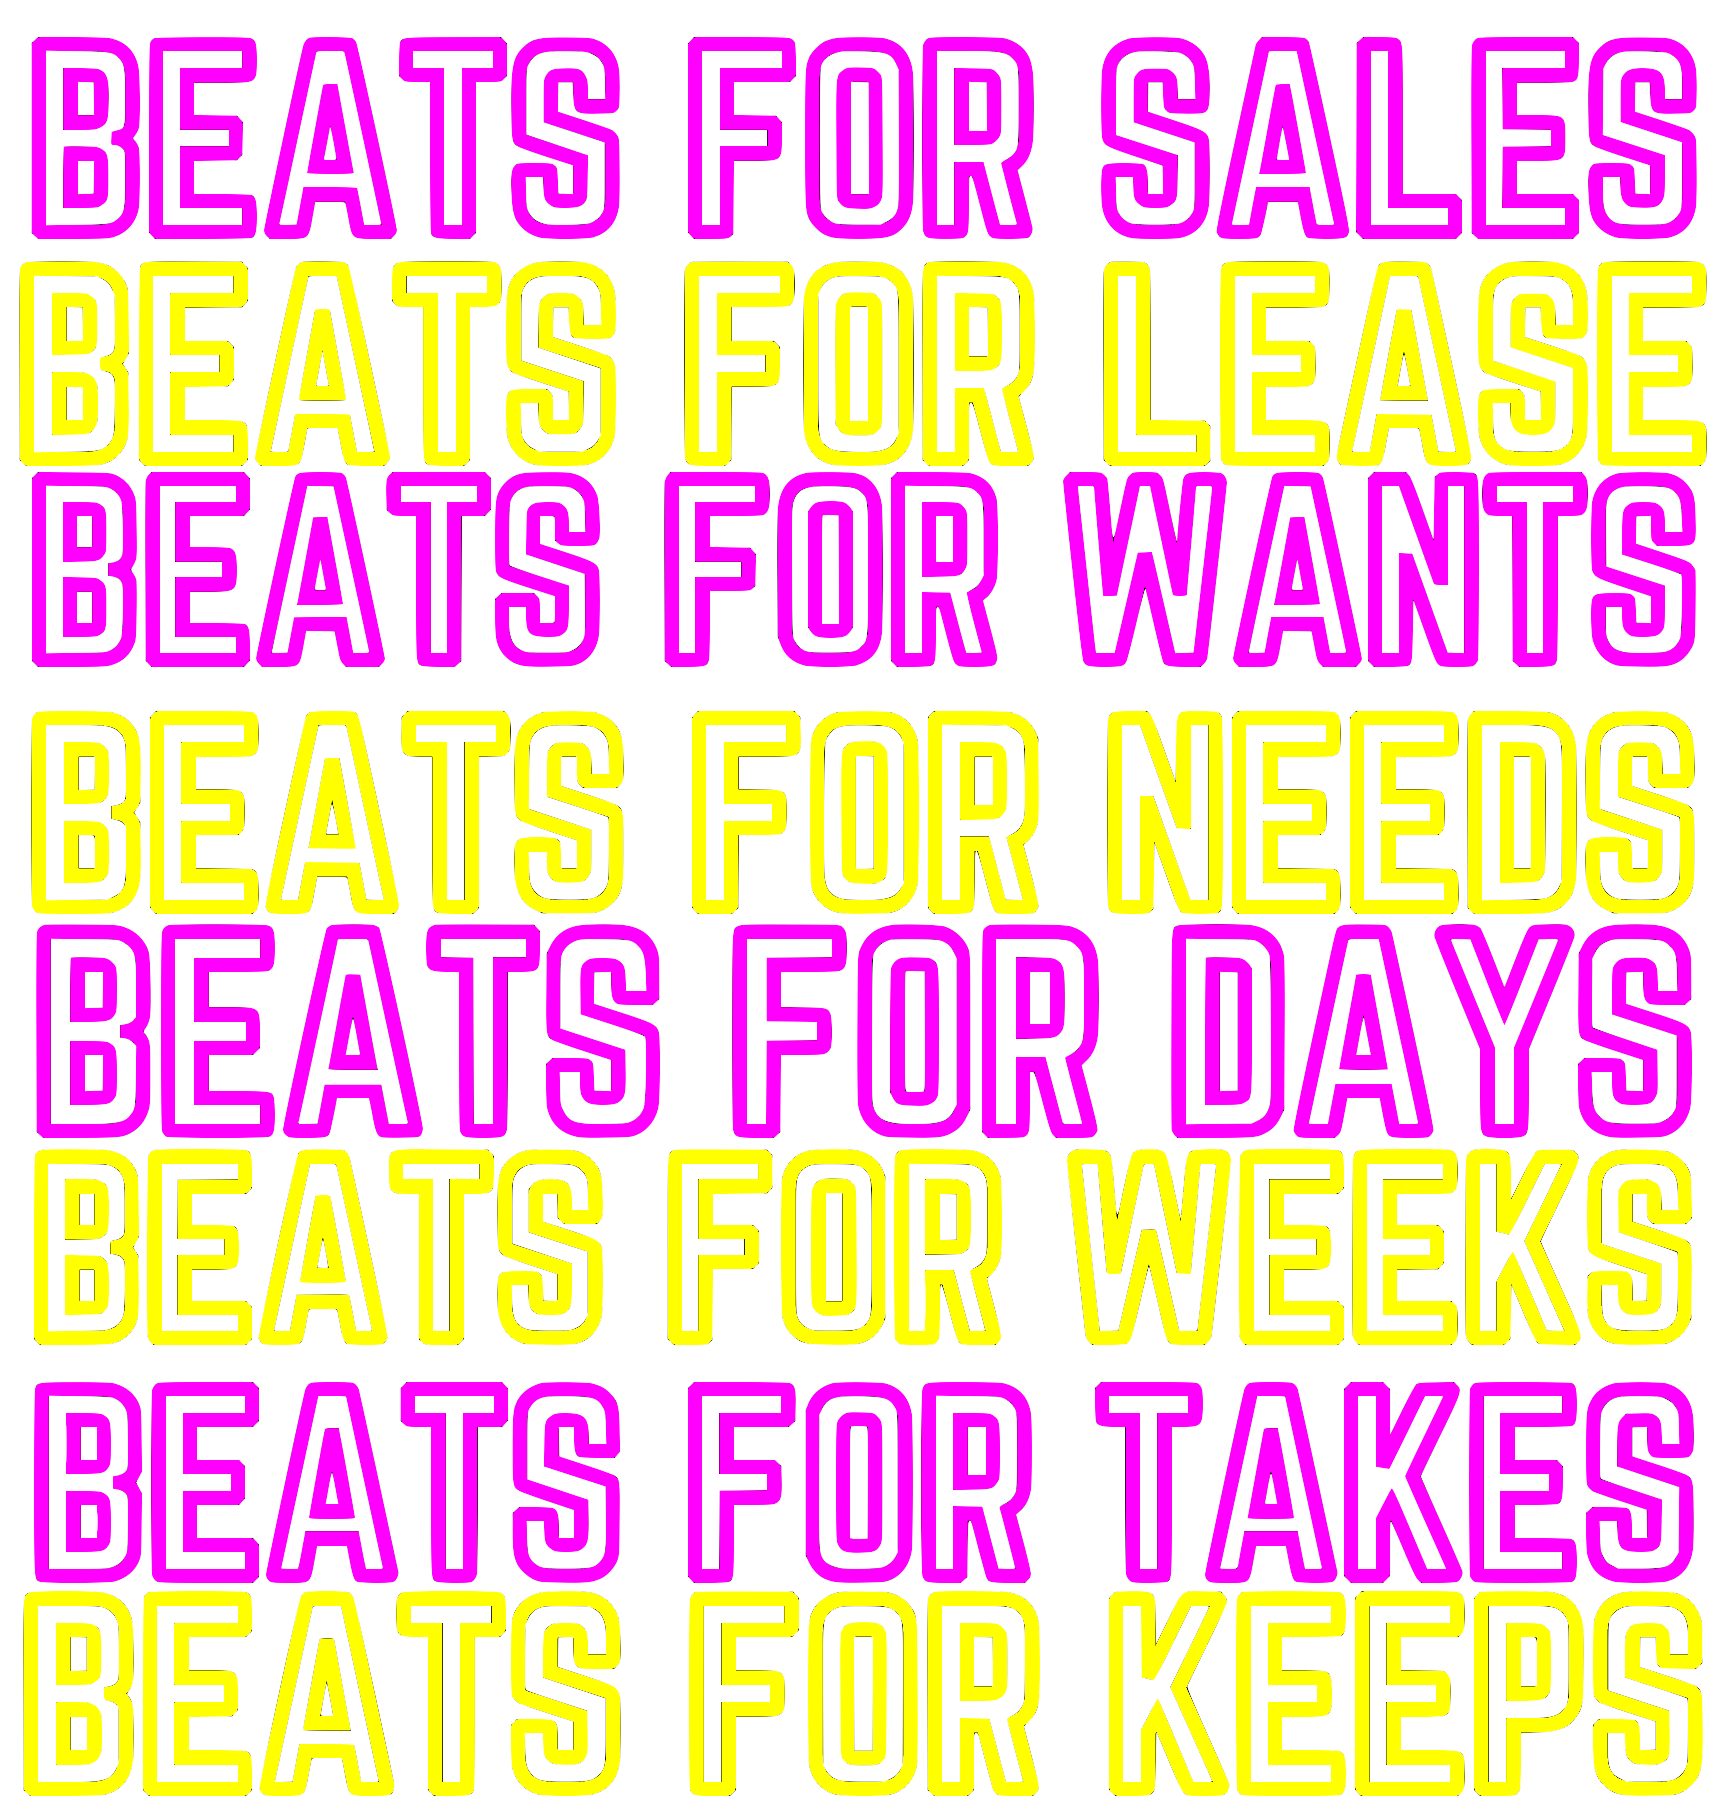 BEATS FOR DAYS @ jacobthewilliam-beats.com